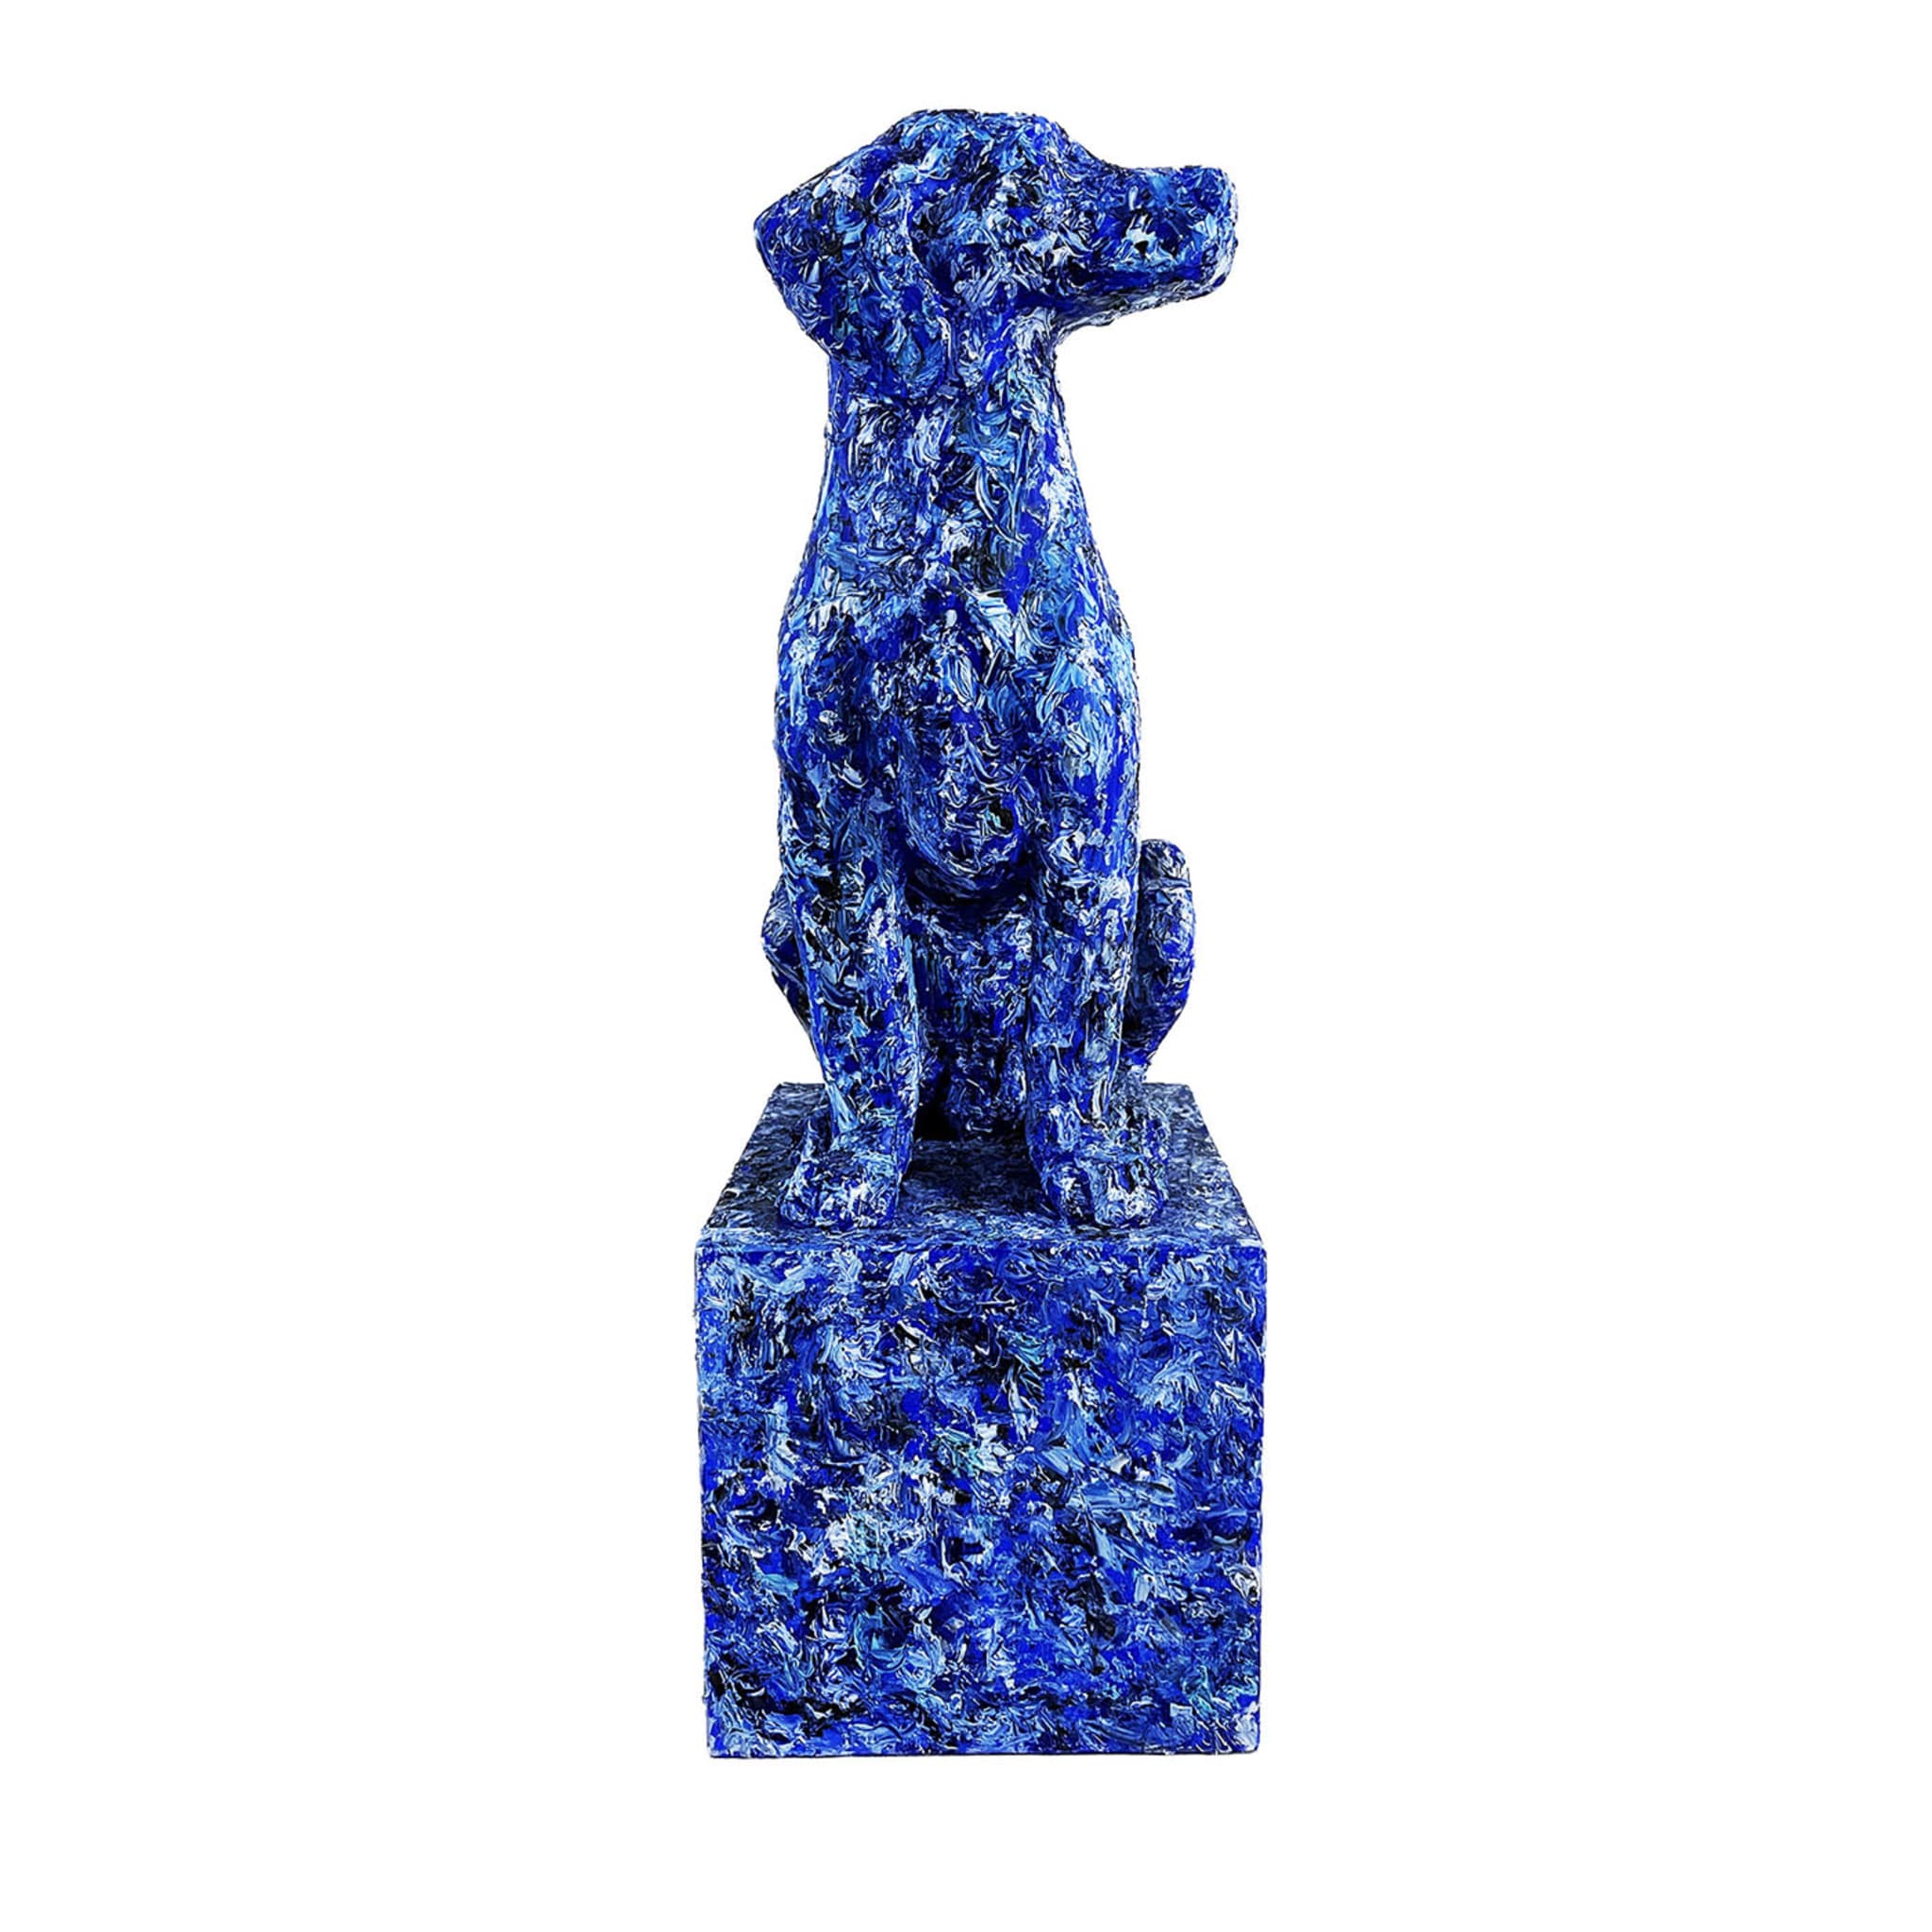 Blue Dog Sculptur - Main view